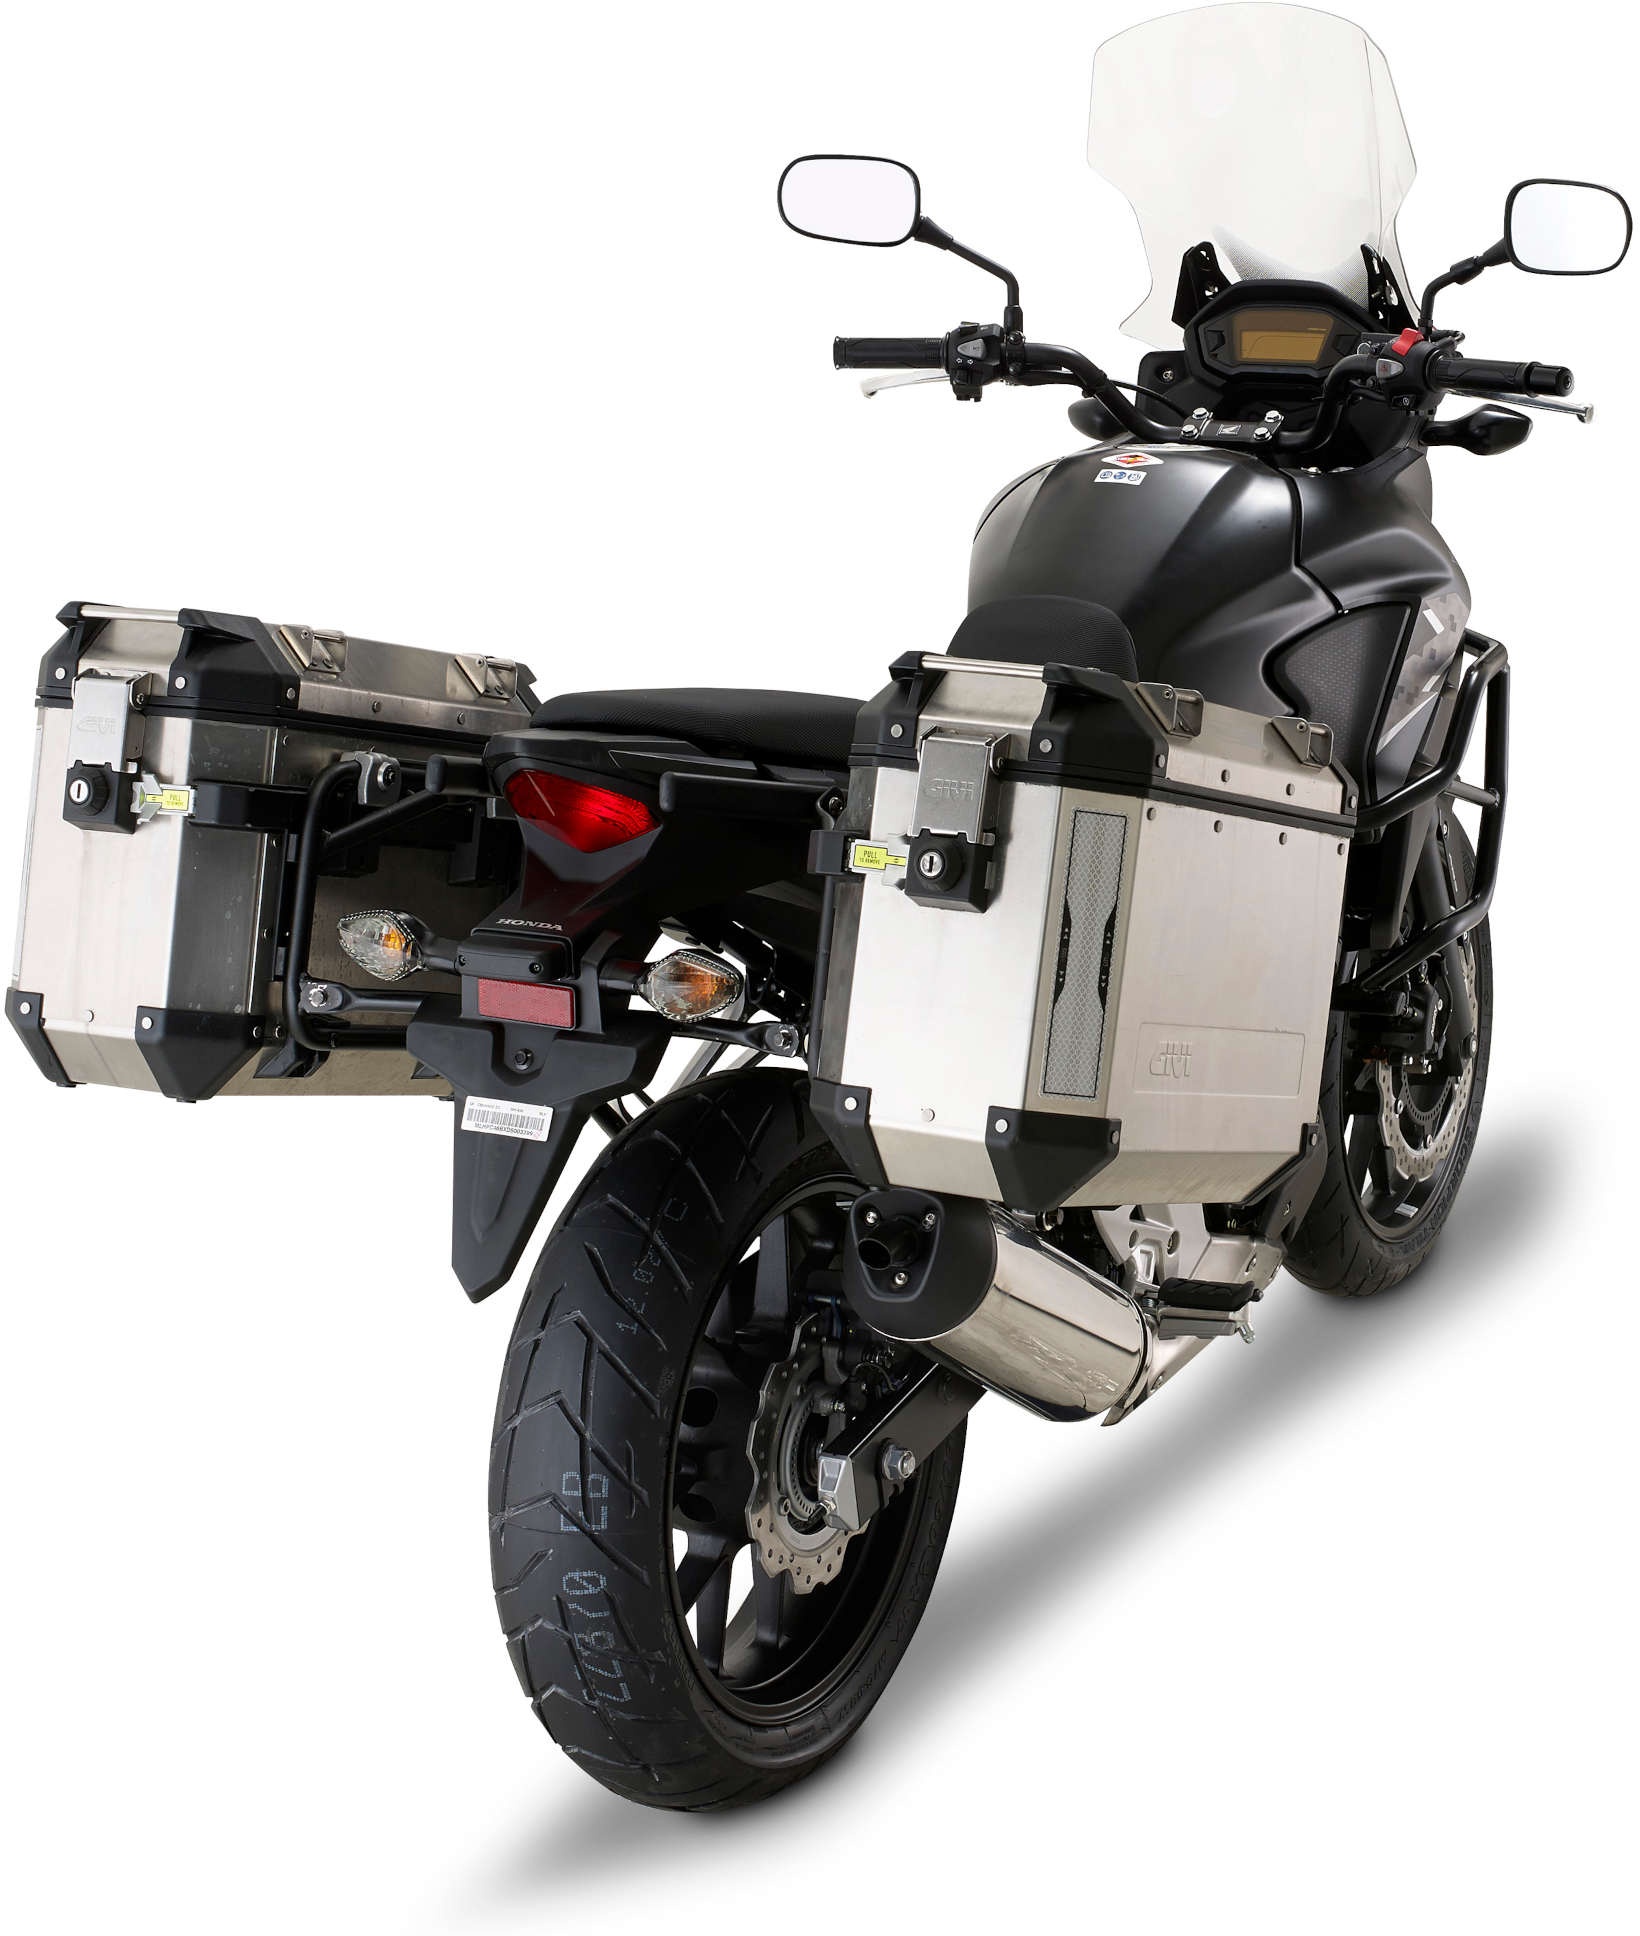 GIVI buisvormige stalen zijkofferdrager voor Trekker Outback Monokey CAM-SIDE Case, voor Honda CB 500 X (13-18